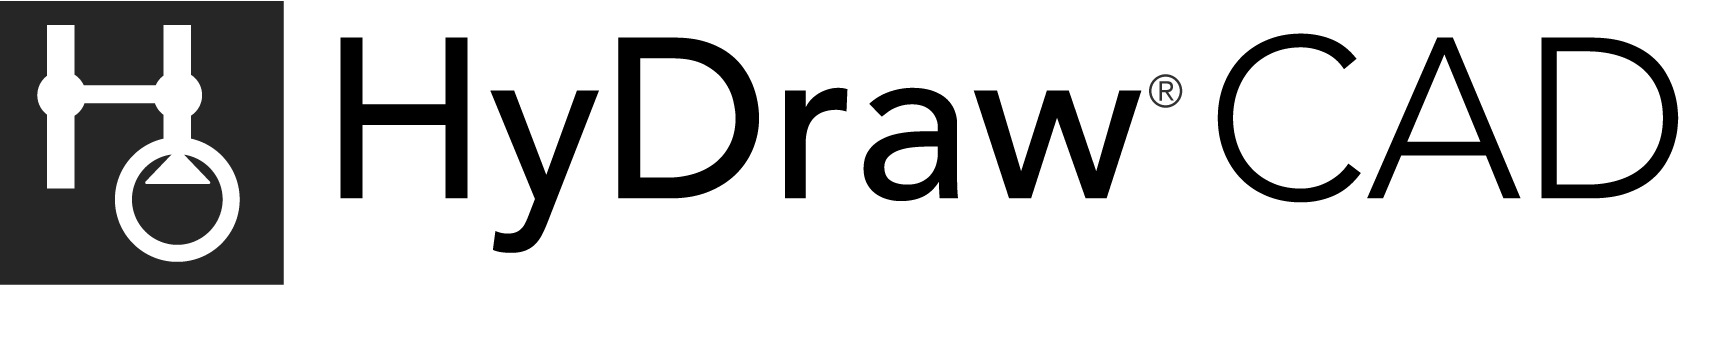 HyDraw CAD logo